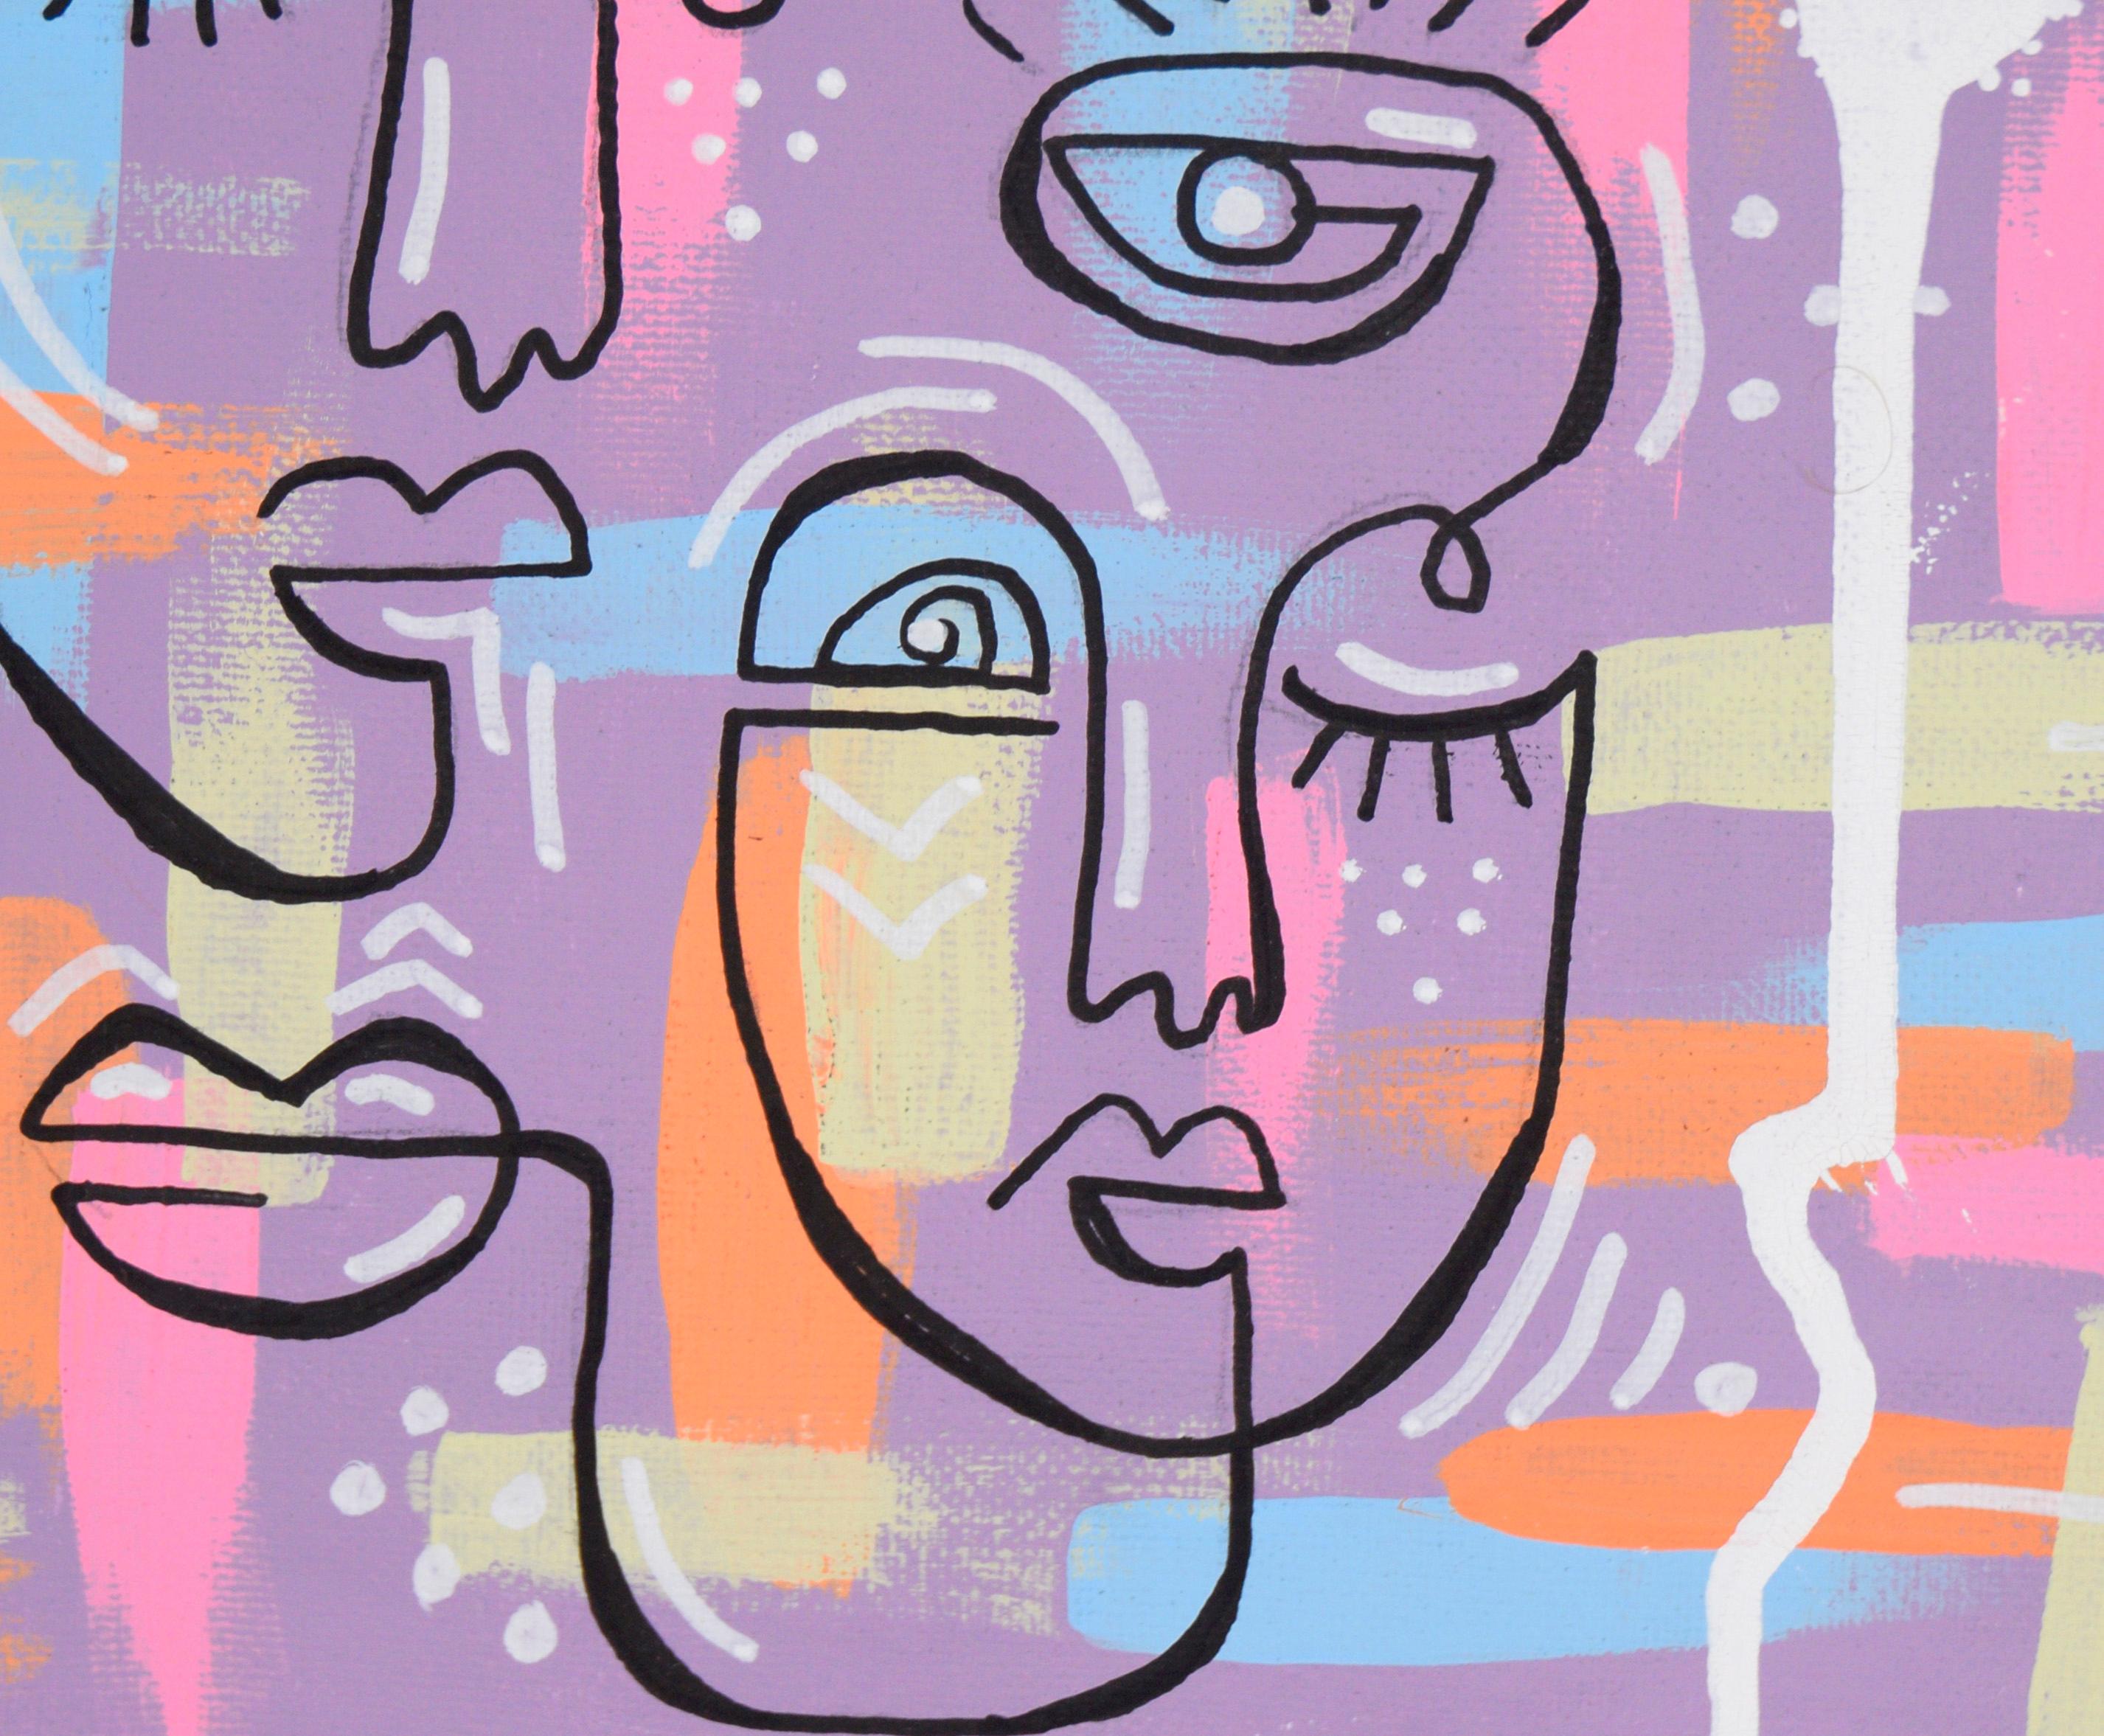 Kubistische Gesichter im Stil von Picassos Ein-Linien-Porträts – Acryl auf Leinwand

Helle abstrahierte Gesichter von einem unbekannten Künstler. Zwei Gesichter sind mit einer minimalen Anzahl von Linien gemalt, in Anlehnung an Picassos 